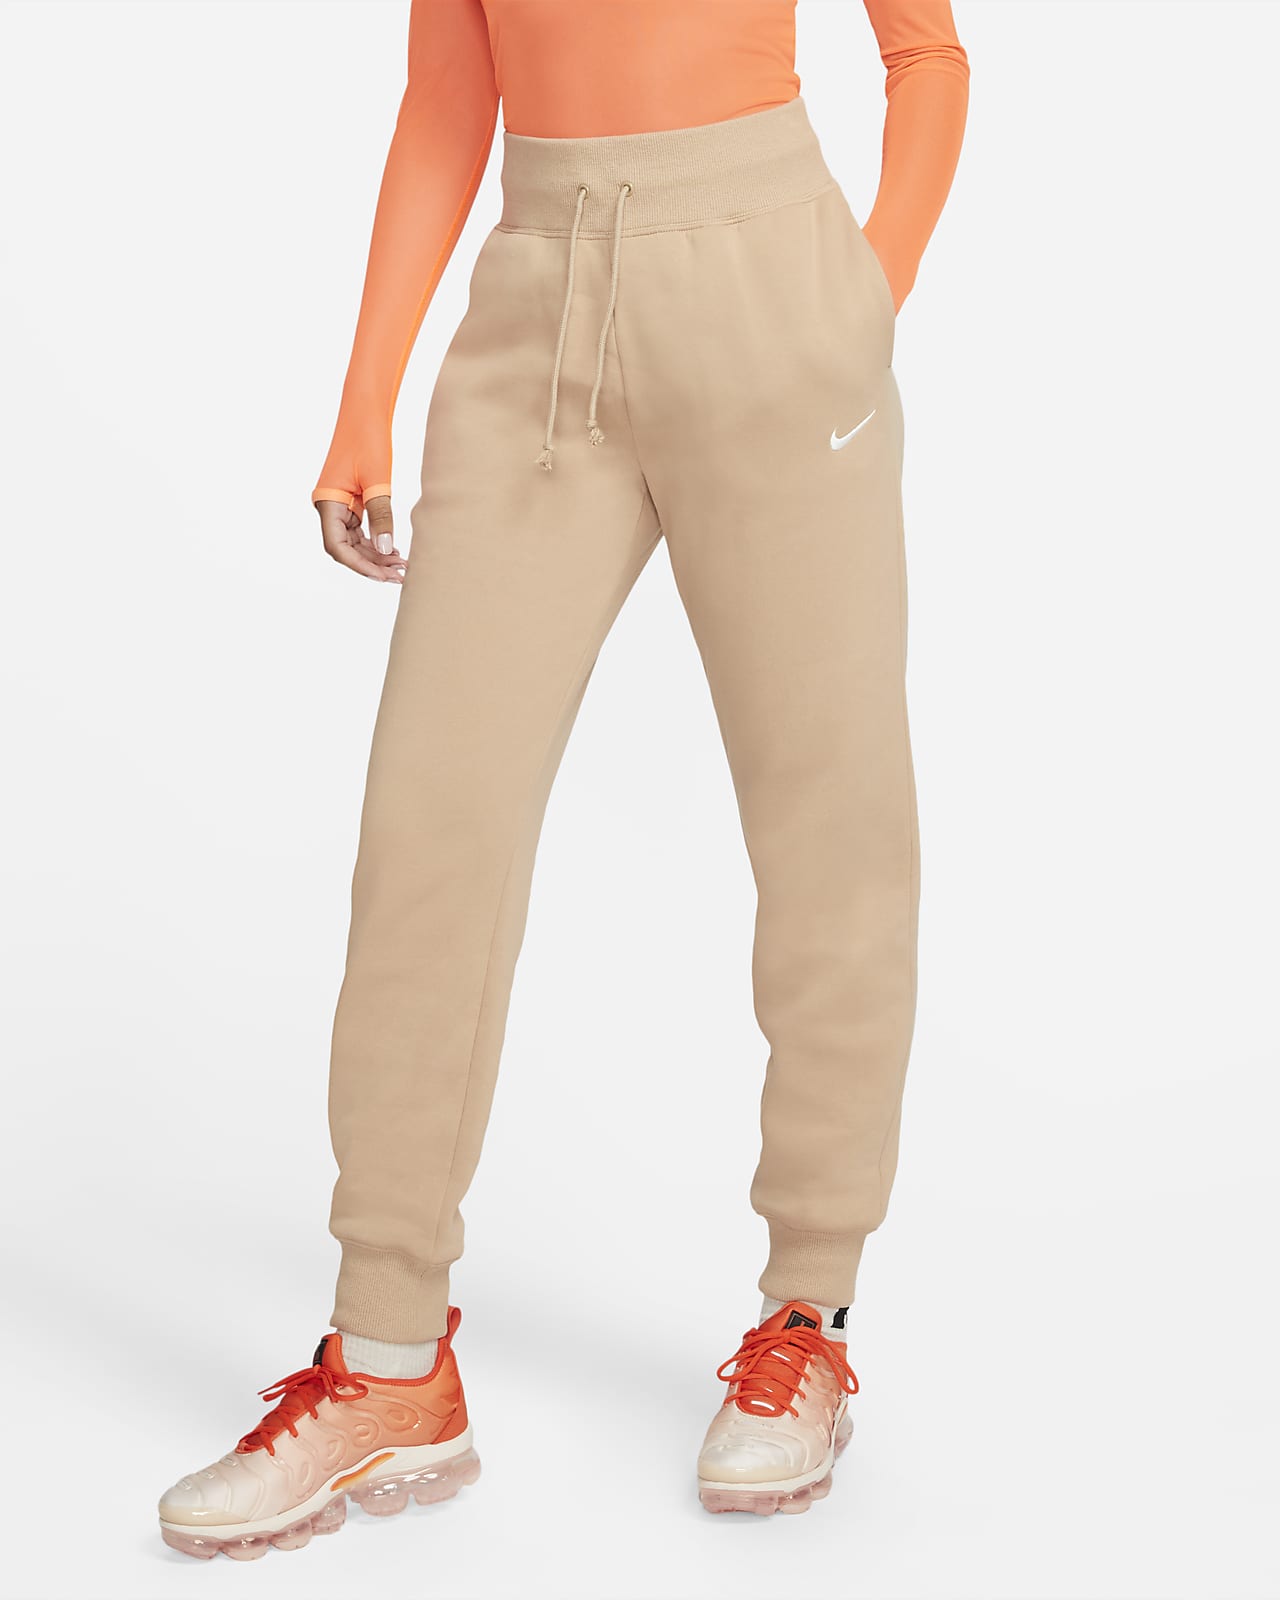 Nike Sportswear Phoenix Fleece Women's High-Waisted Joggers. Nike FI